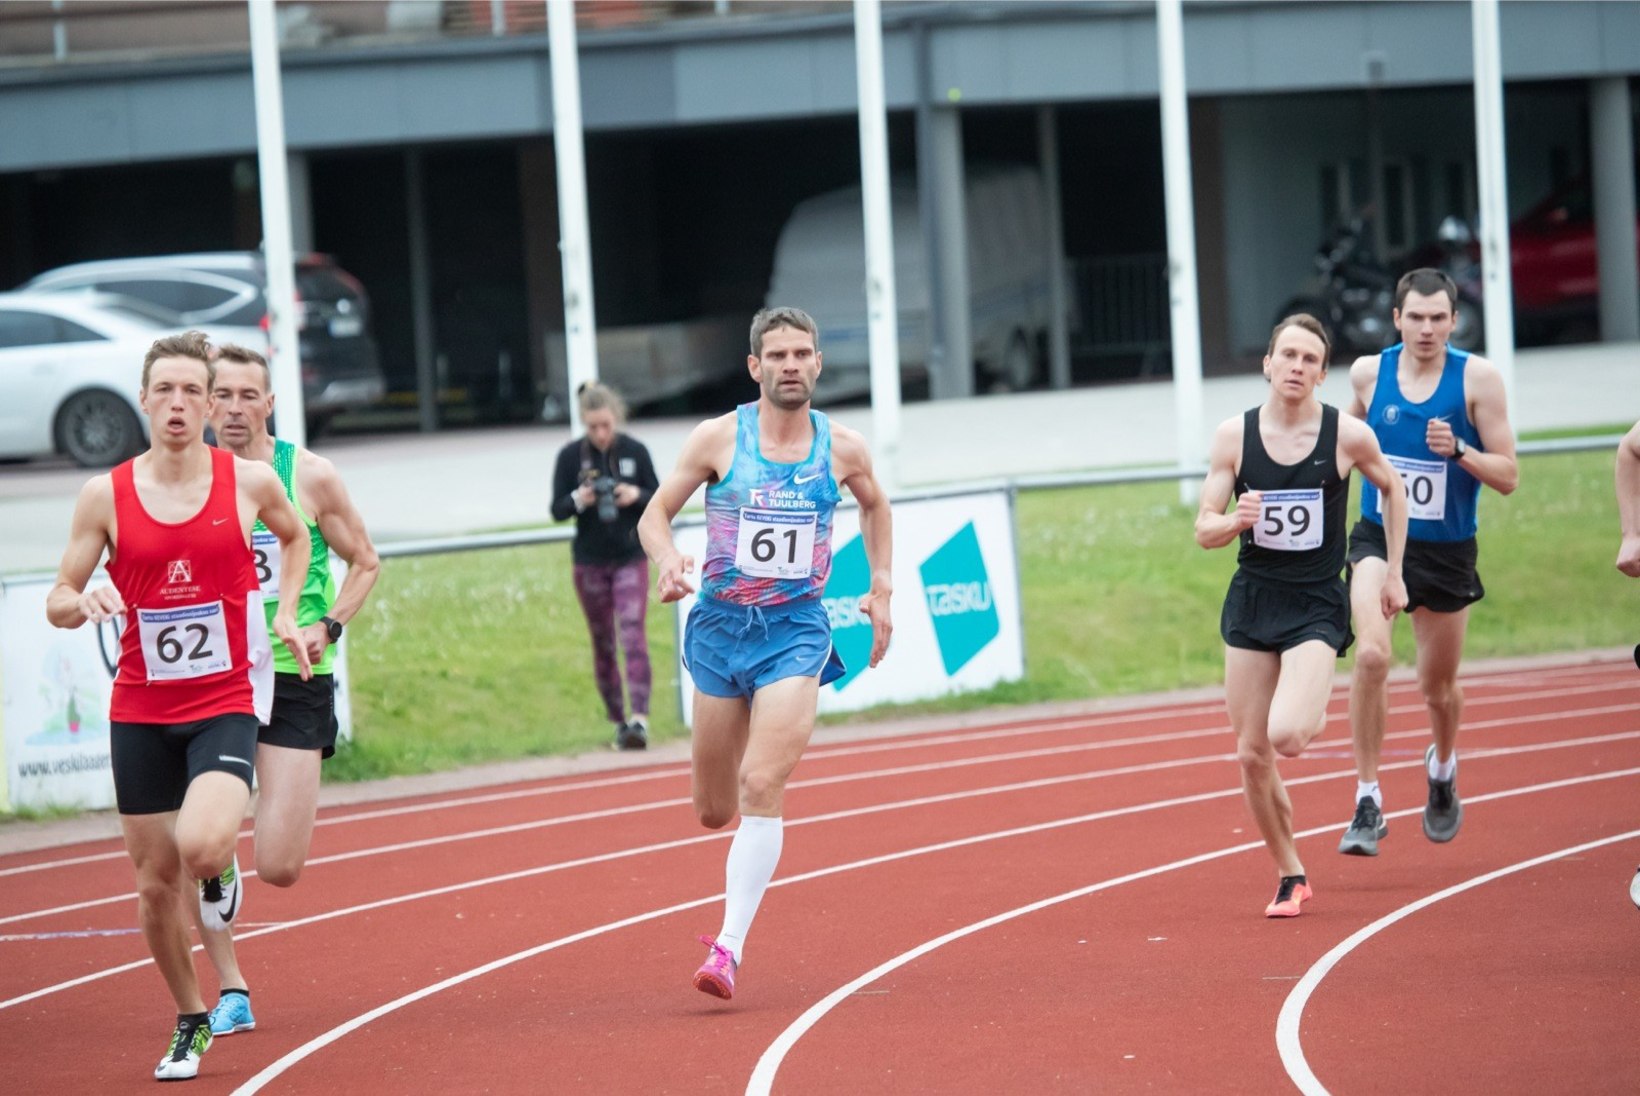 FOTOD | Maratoonar Nurme näitas 800 meetri meestele kandu, laskesuusakoondise peatreener püstitas Eesti rekordi